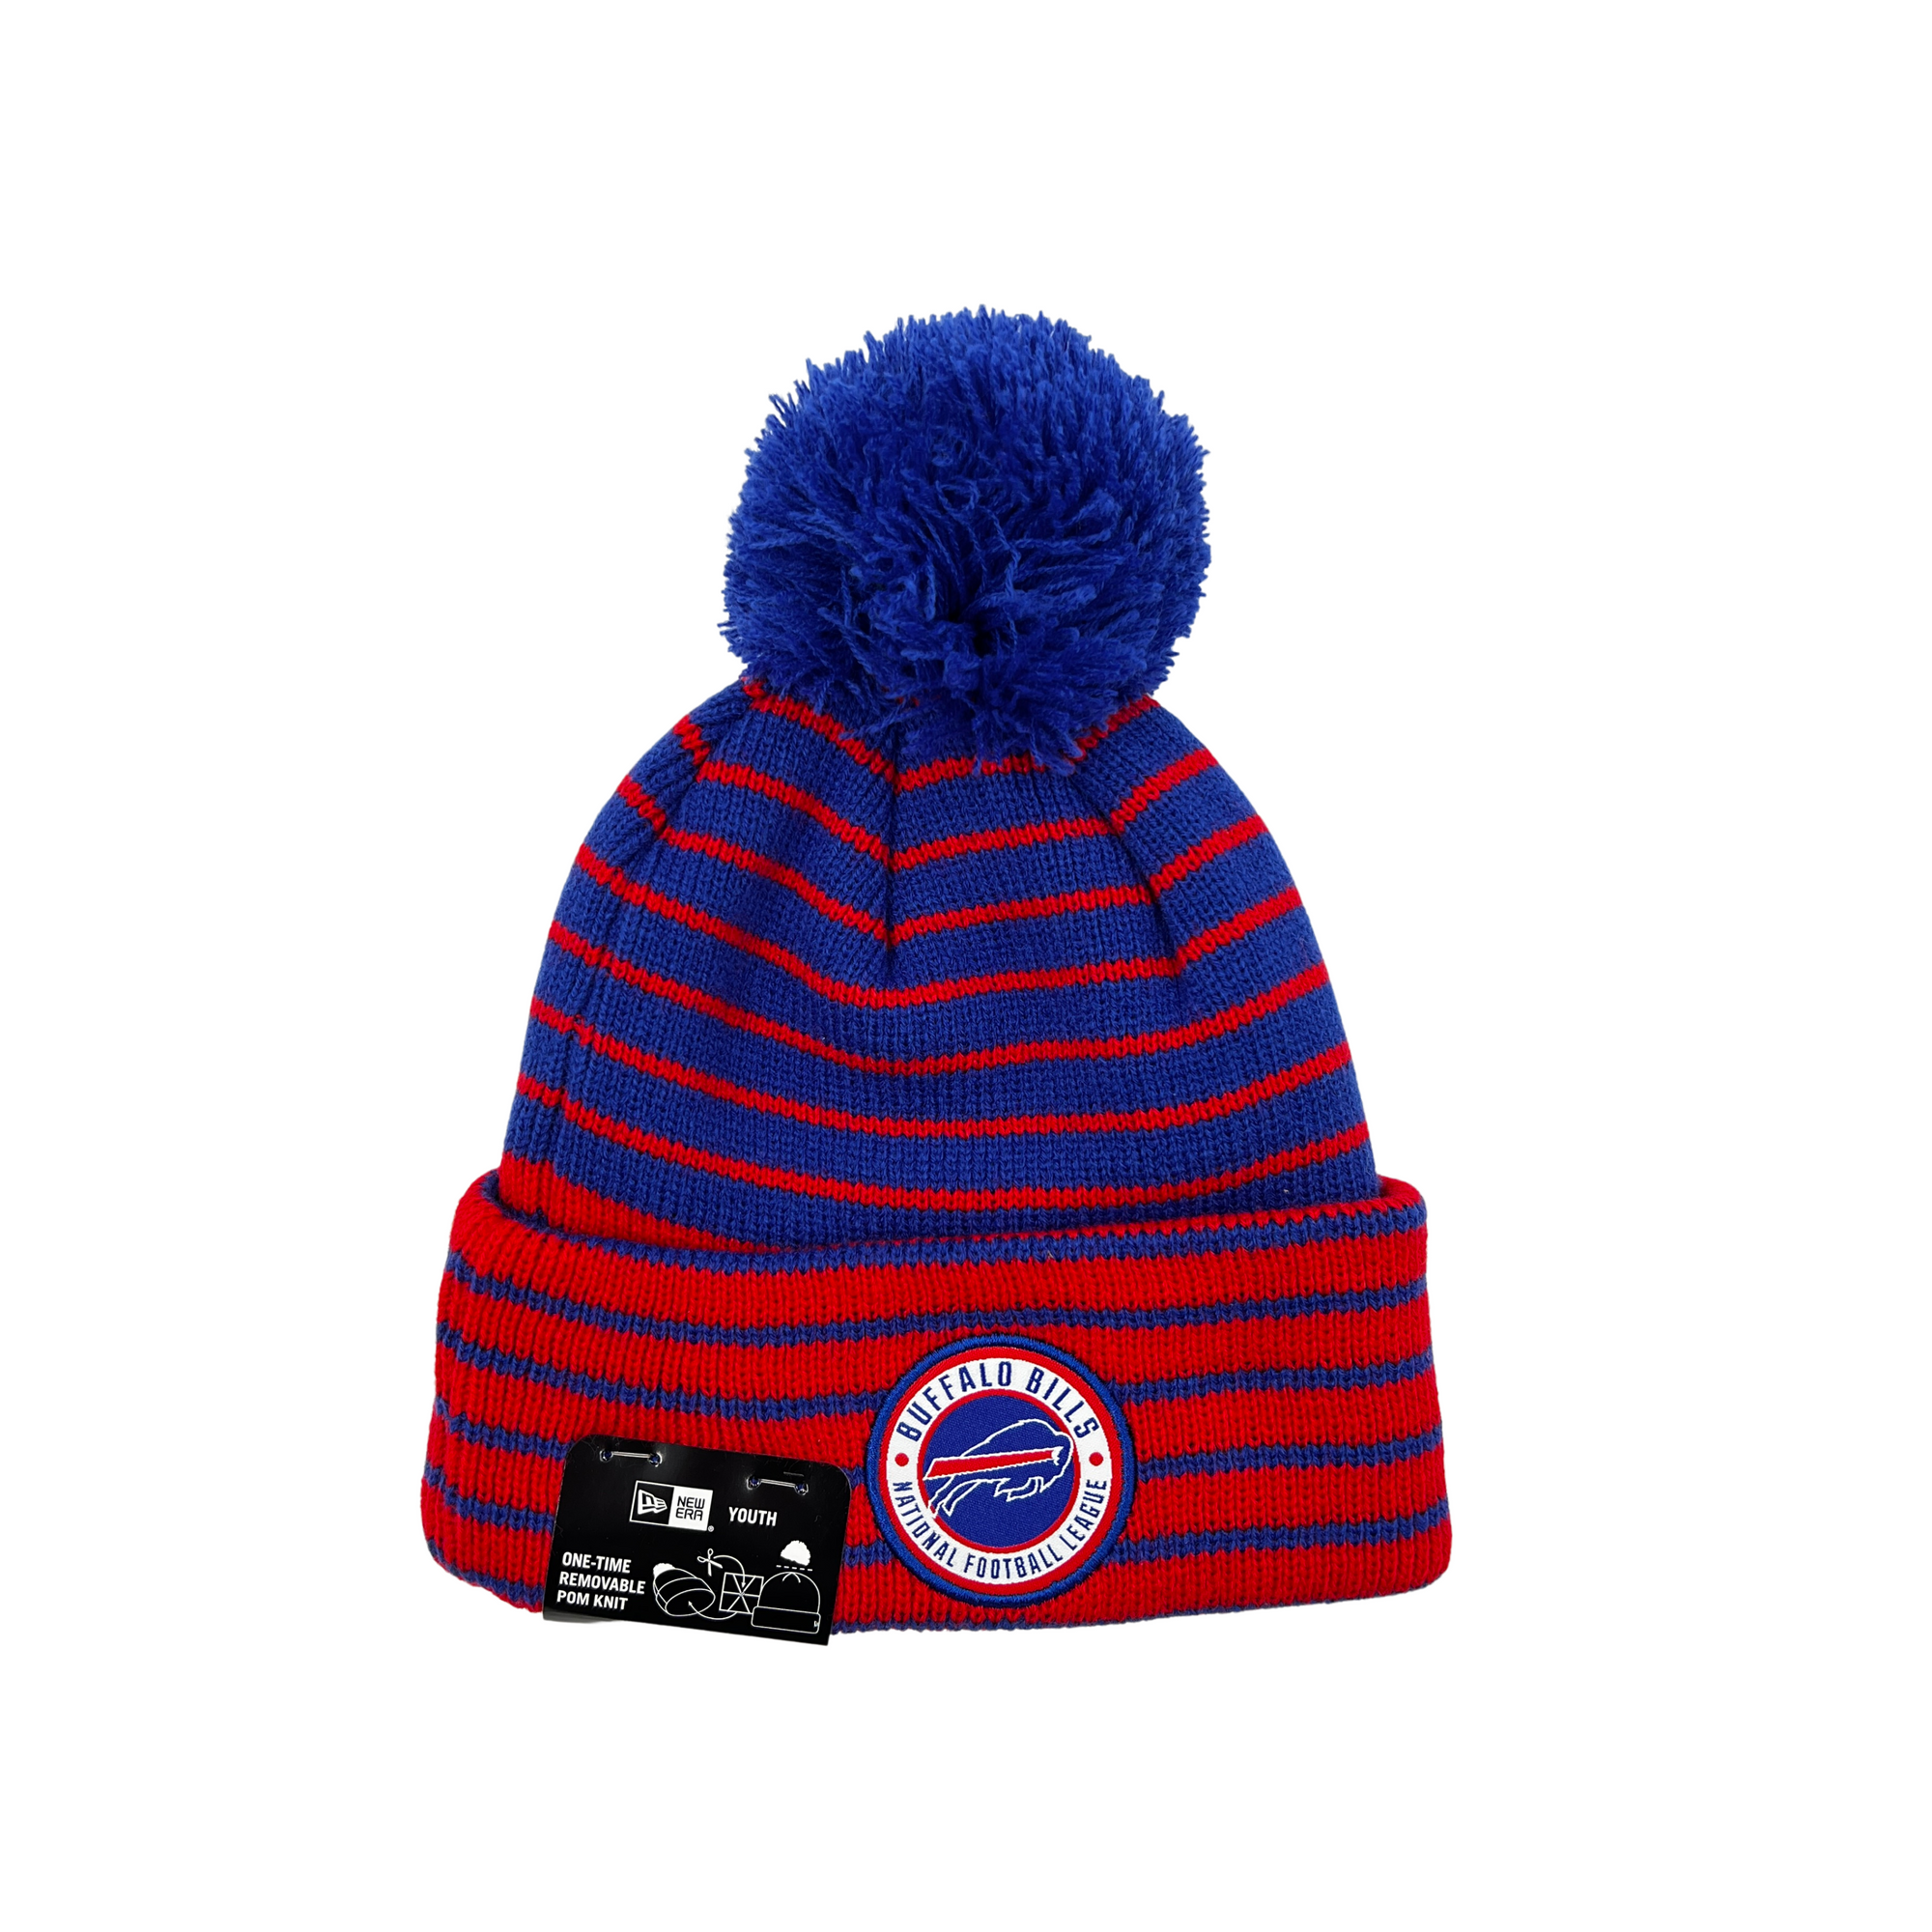 Youth Buffalo Bills Royal & Blue Knit Winter Hat